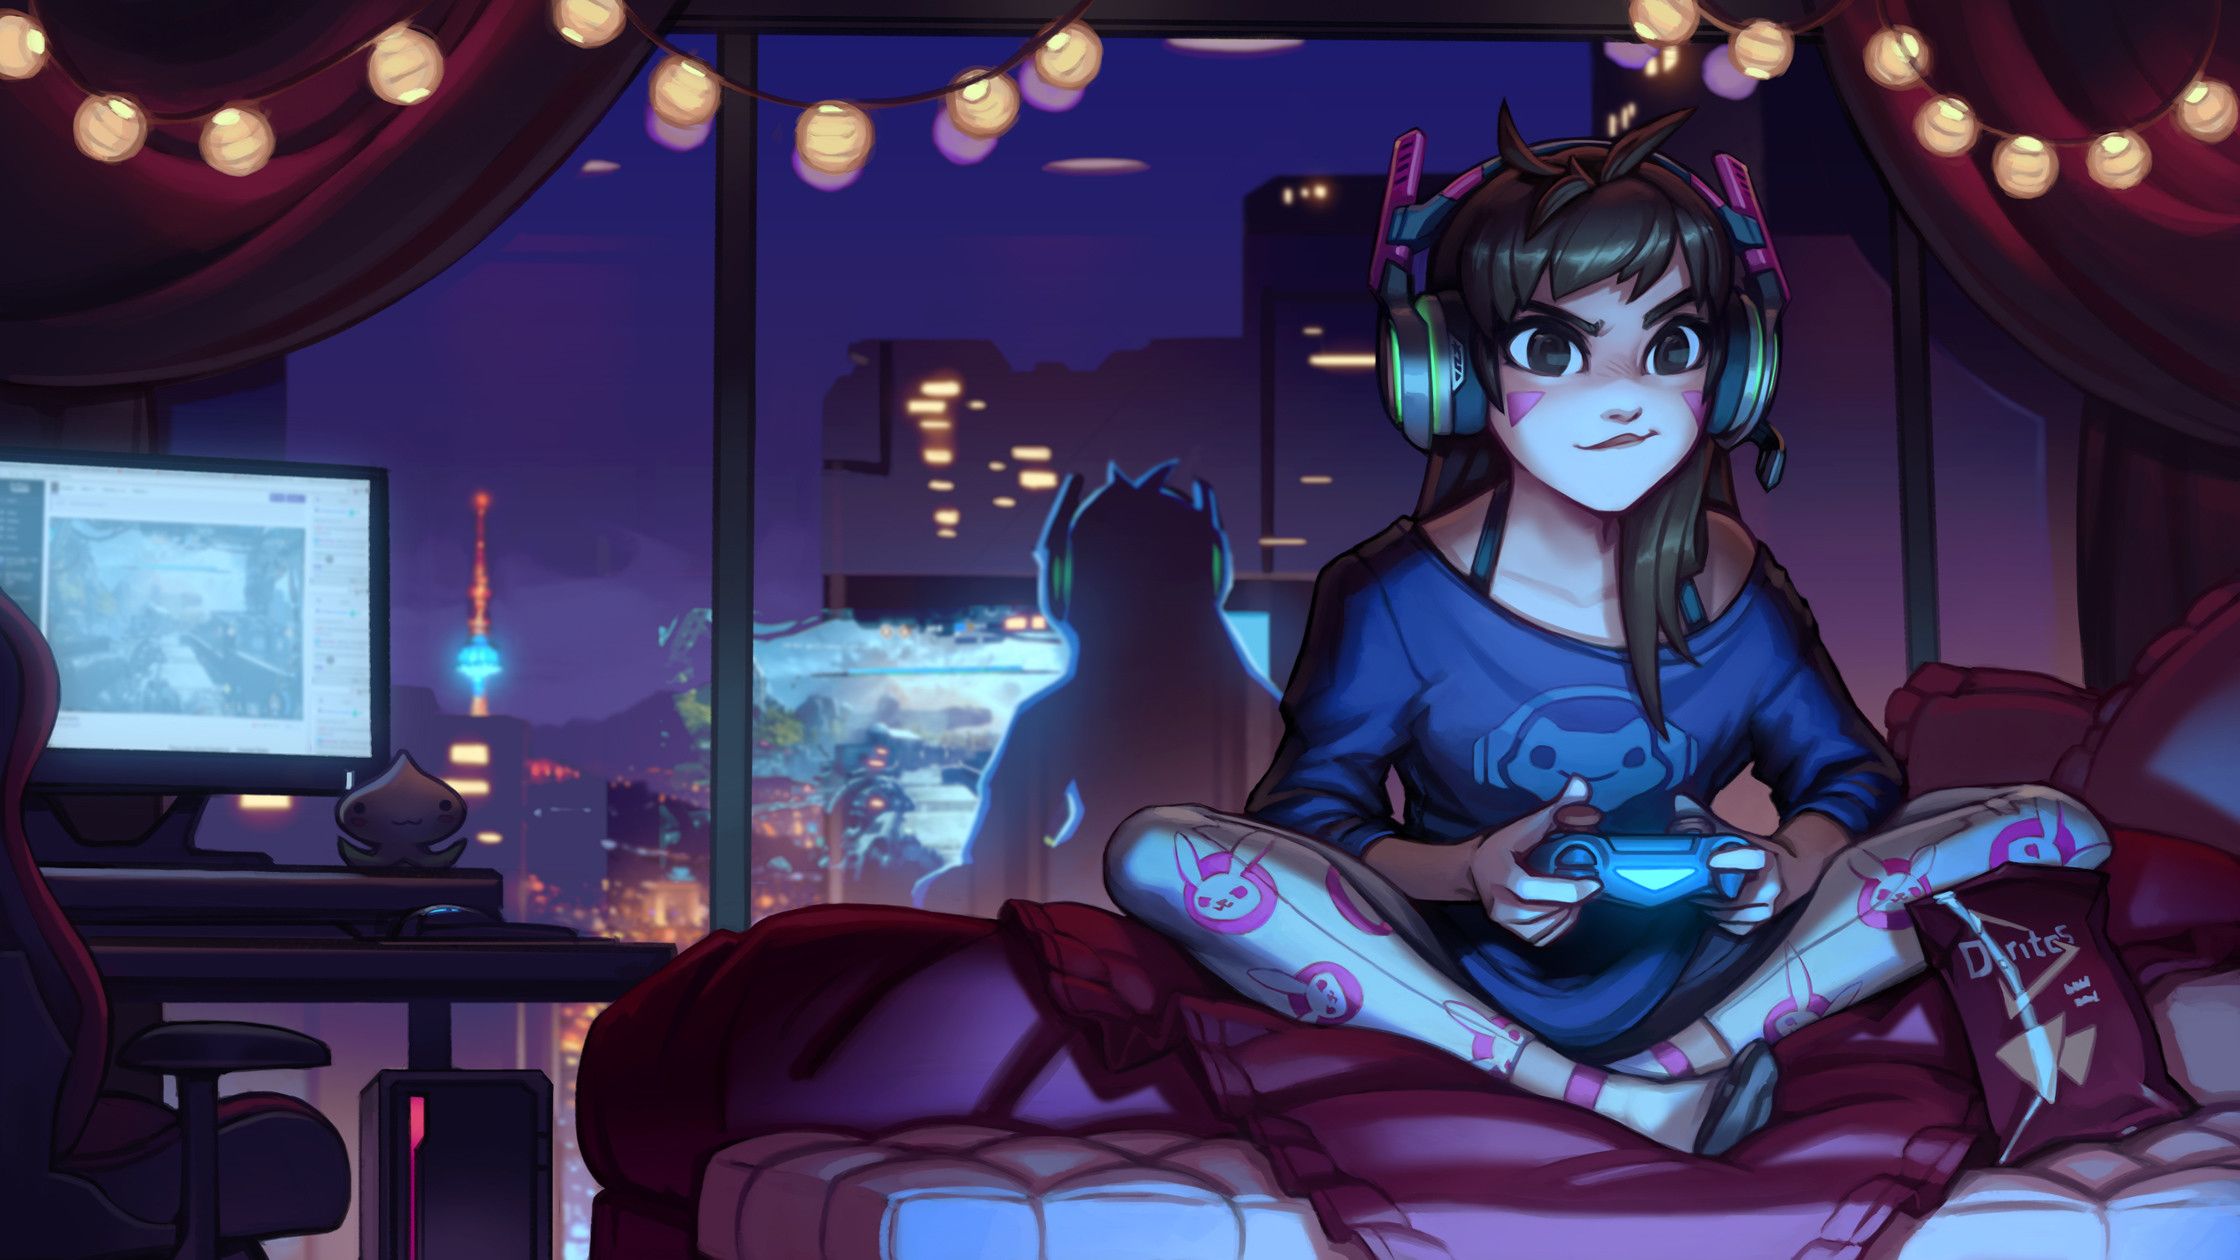 Gaming Anime Girl Wallpaper Free Gaming Anime Girl Background